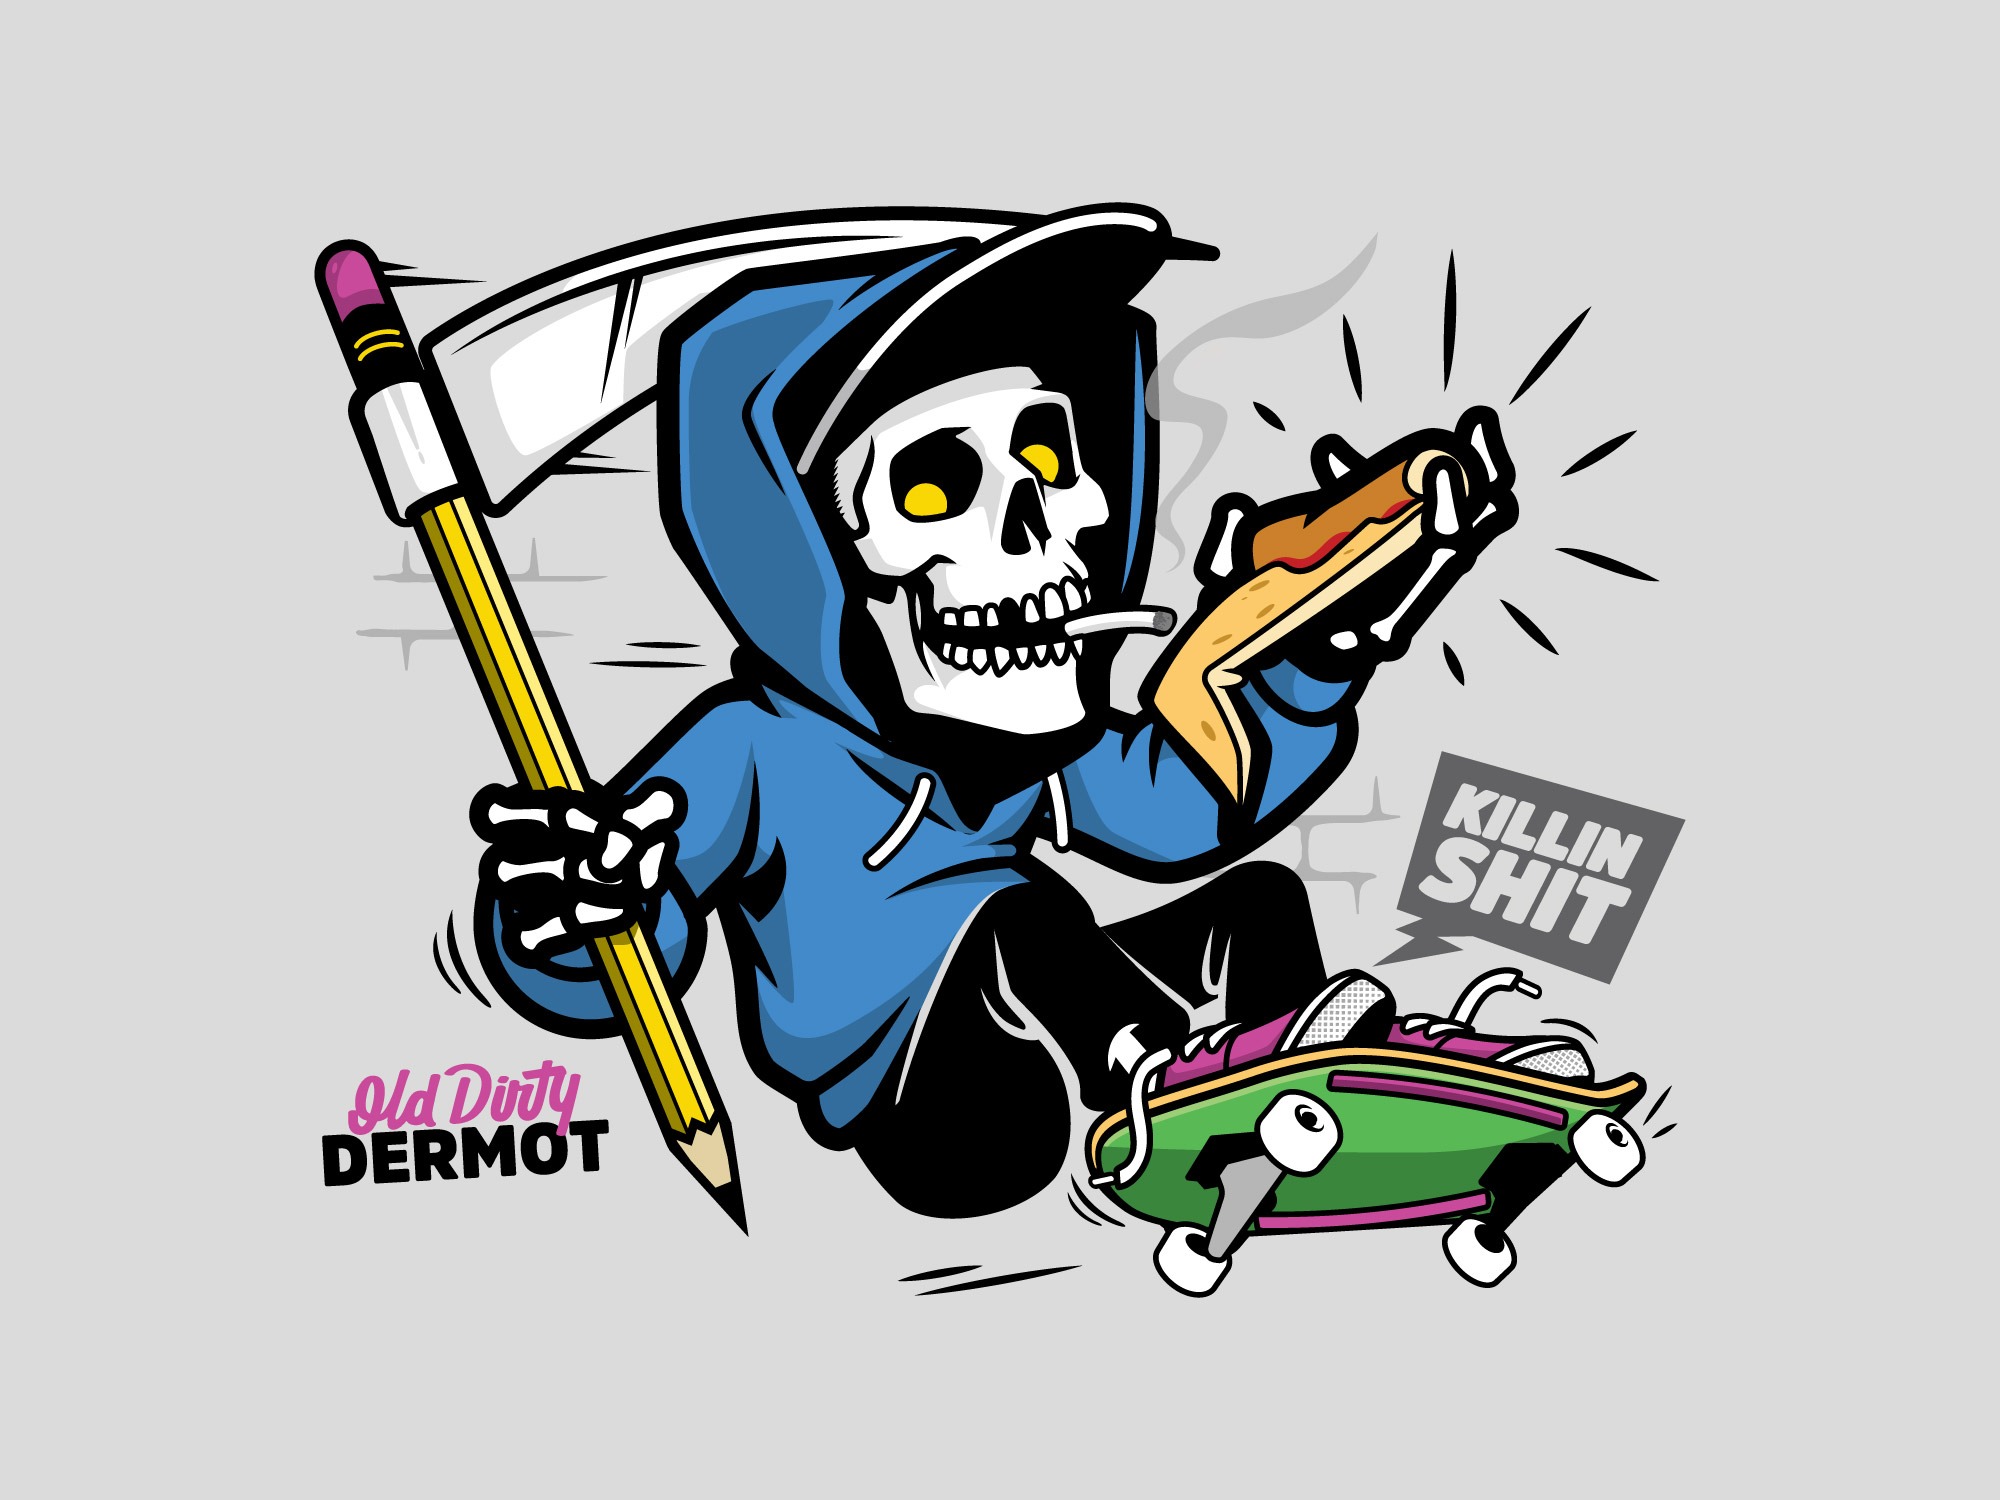 Killin-shit-skateboard-reaper